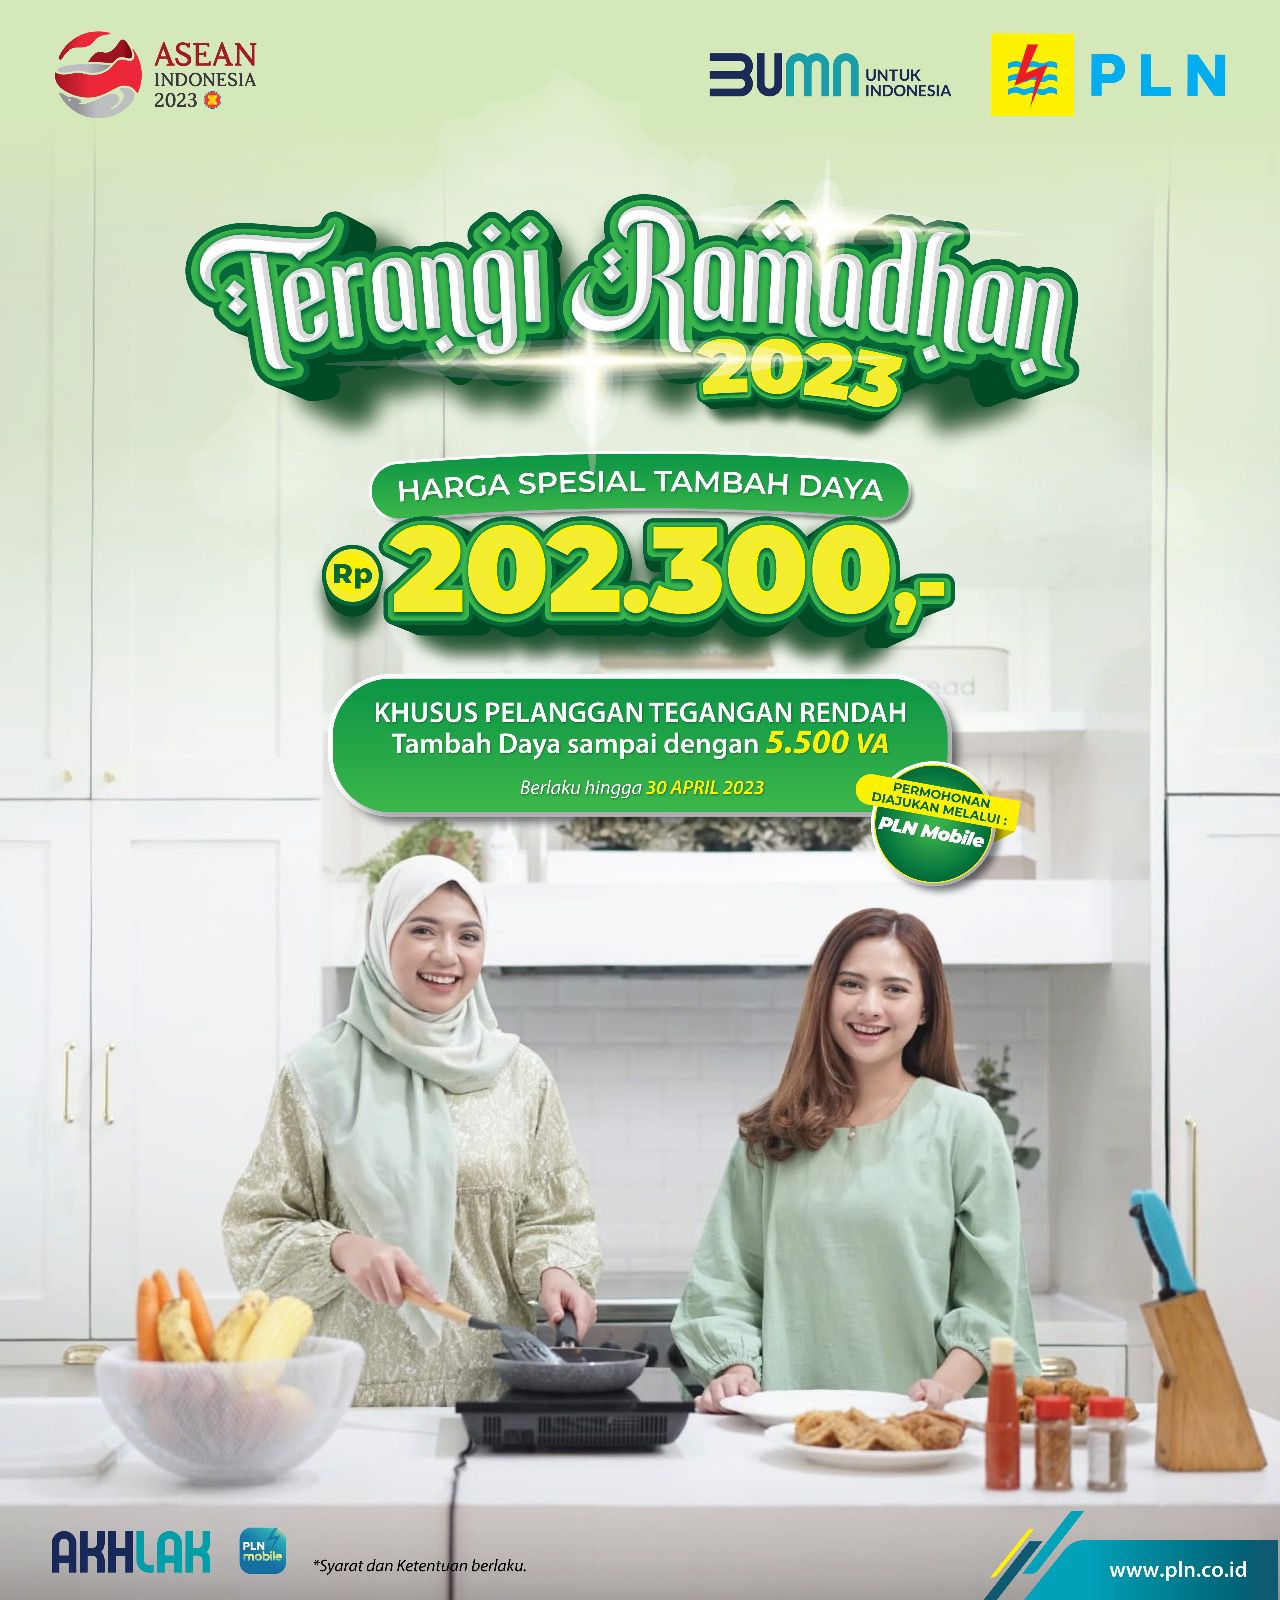 Mudahkan Masyarakat, Komisi VI DPR RI Apresiasi Program Promo Tambah Daya Ramadhan PLN